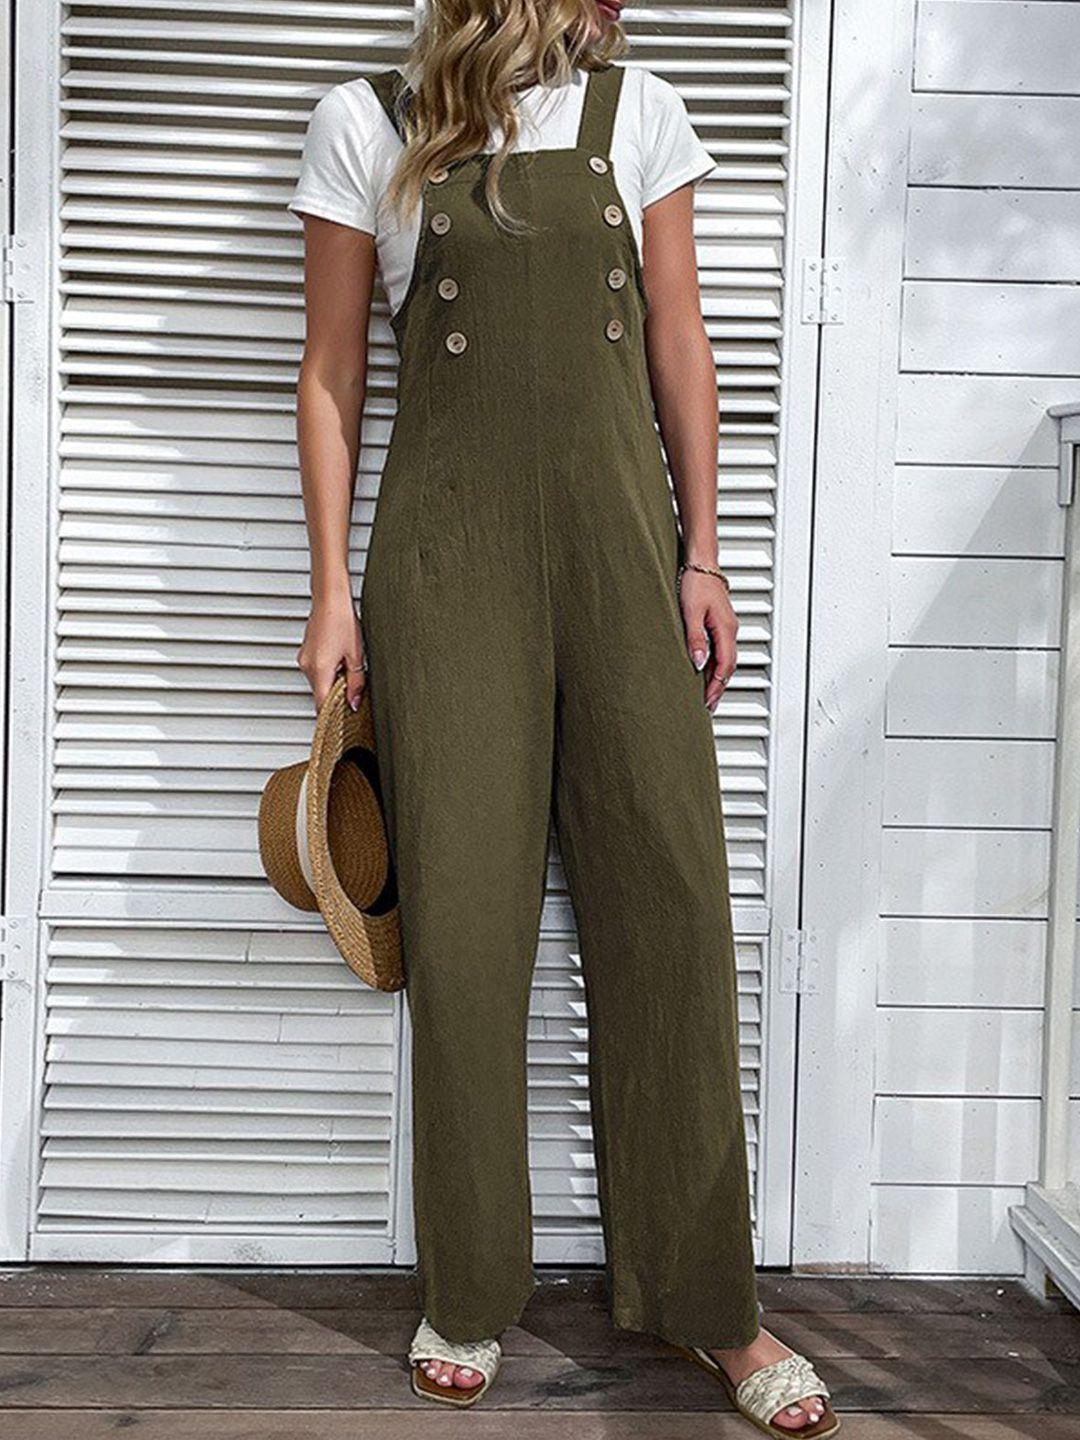 stylecast olive green shoulder straps cotton basic jumpsuit